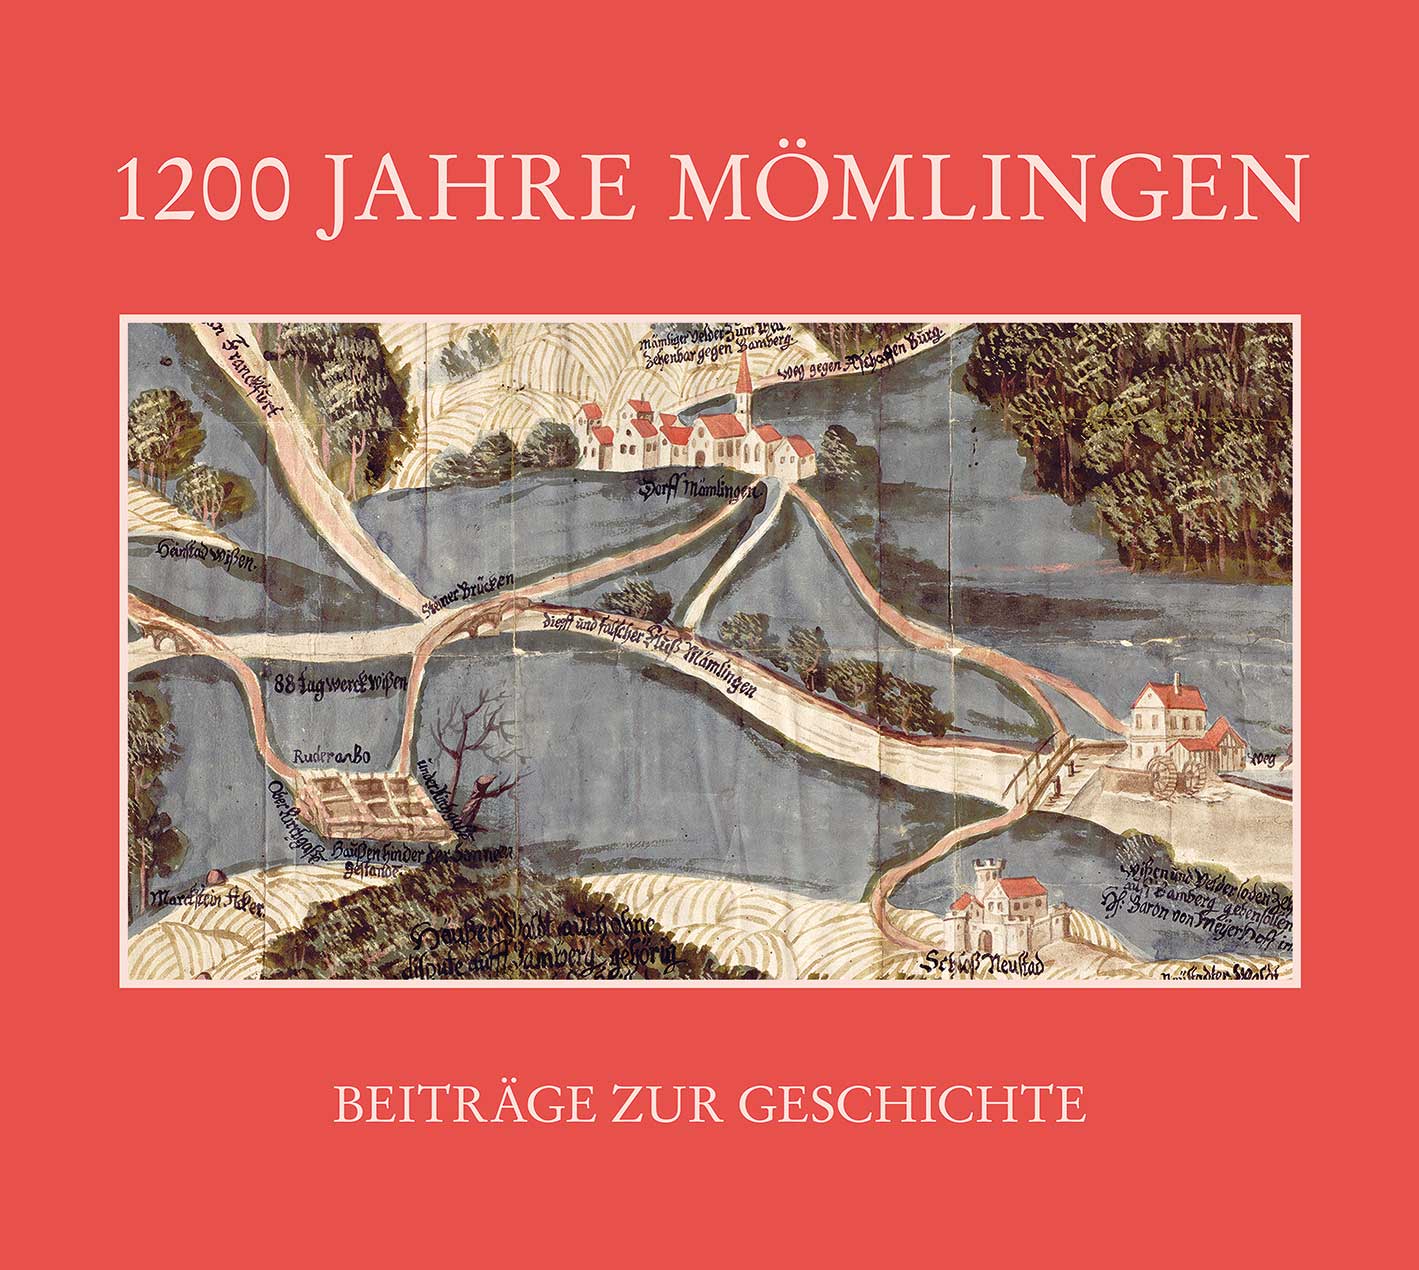 Chronik 1200 Jahre Mömlingen